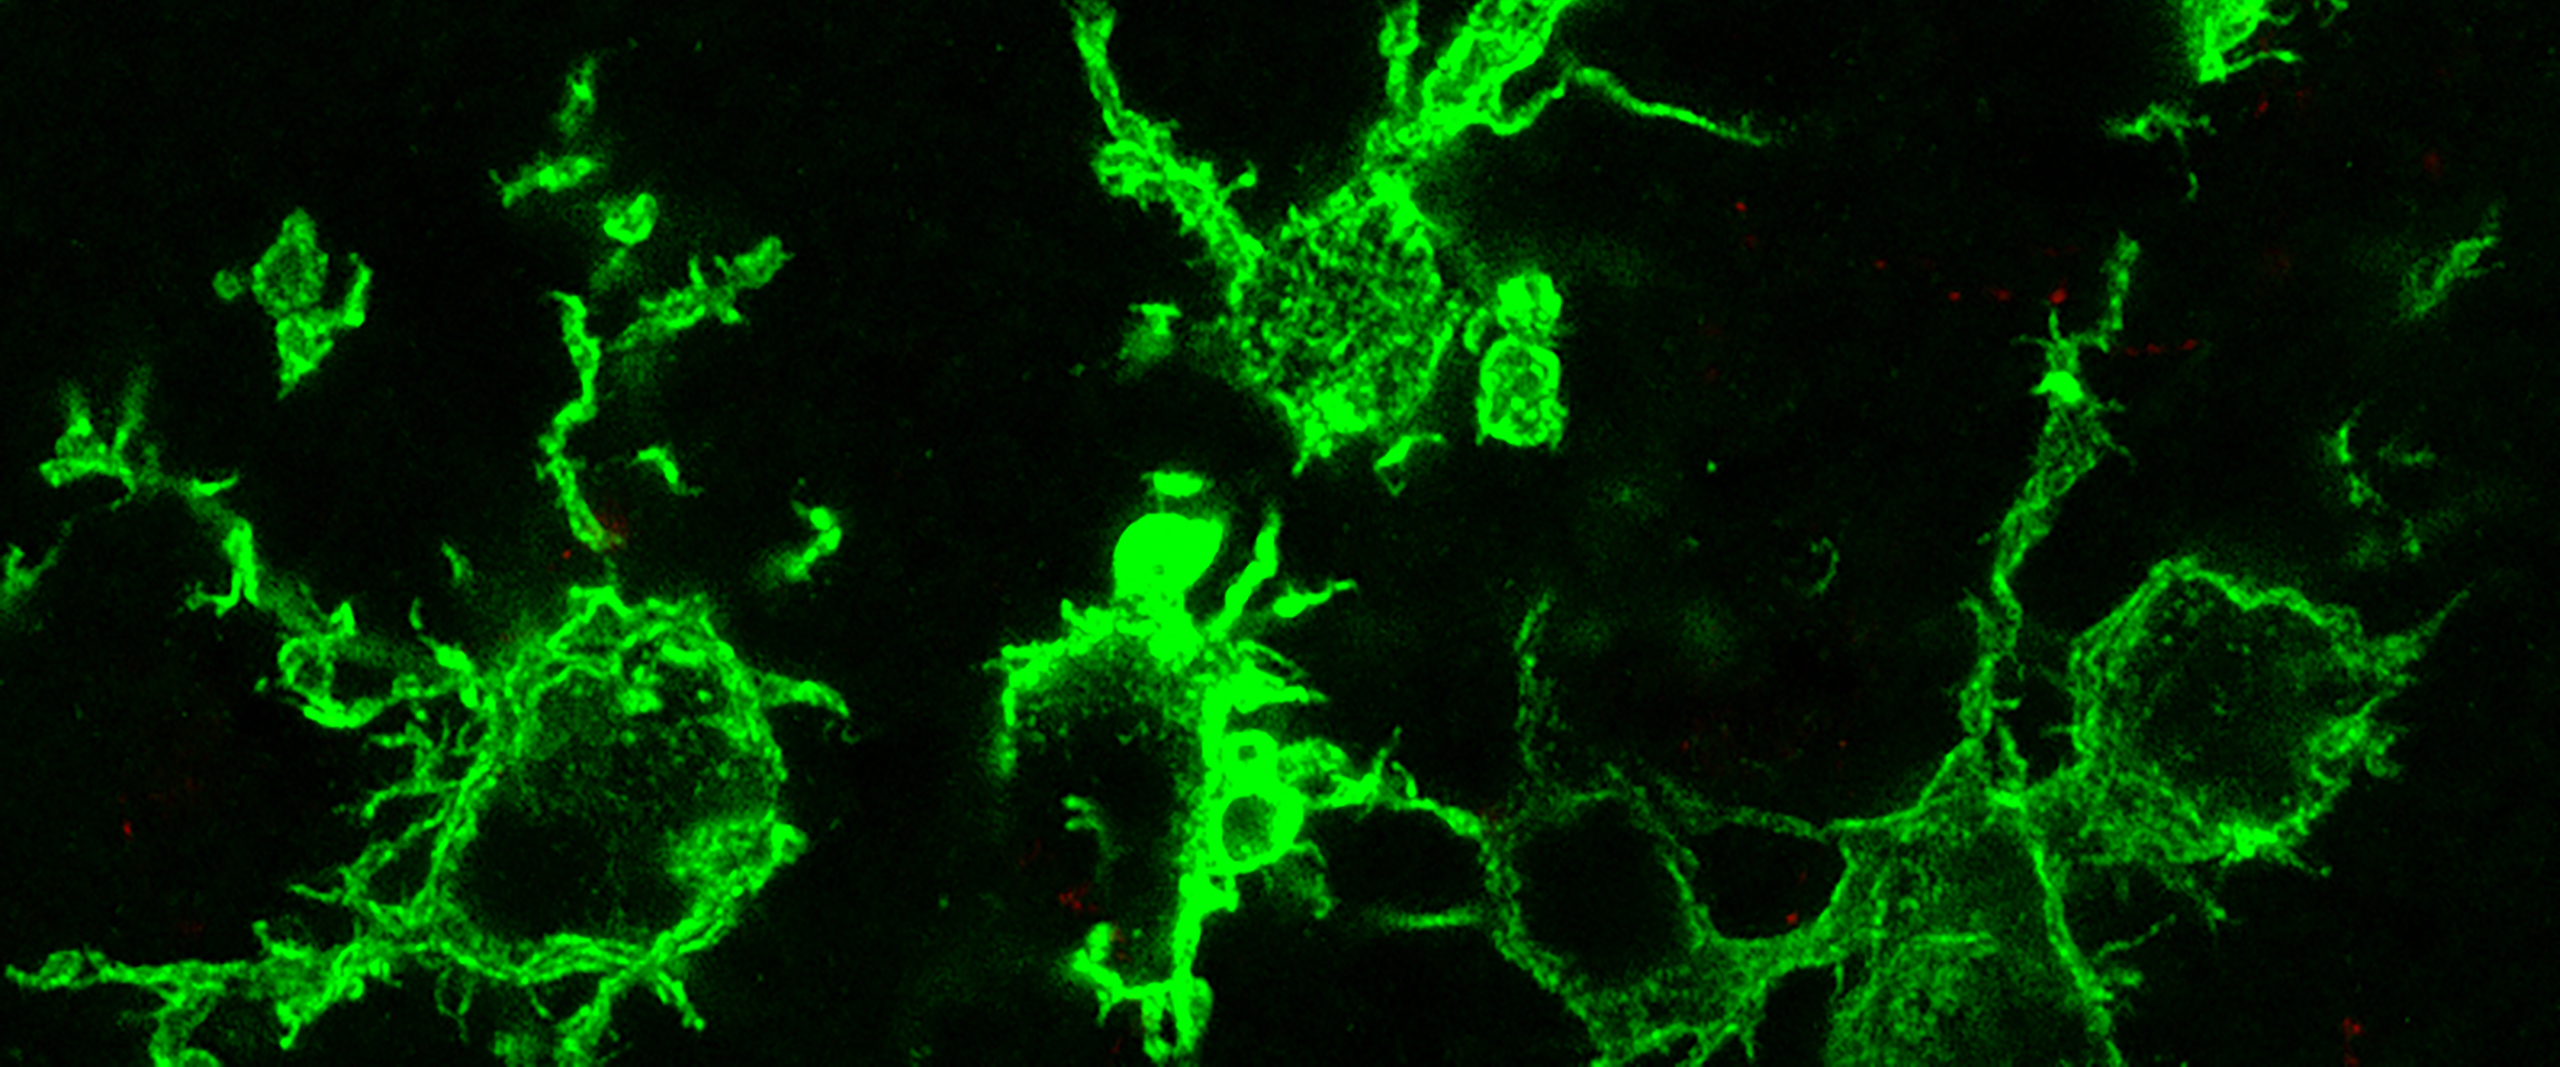 Mikroskopisches Bild von grün angefärbten Makrophagen